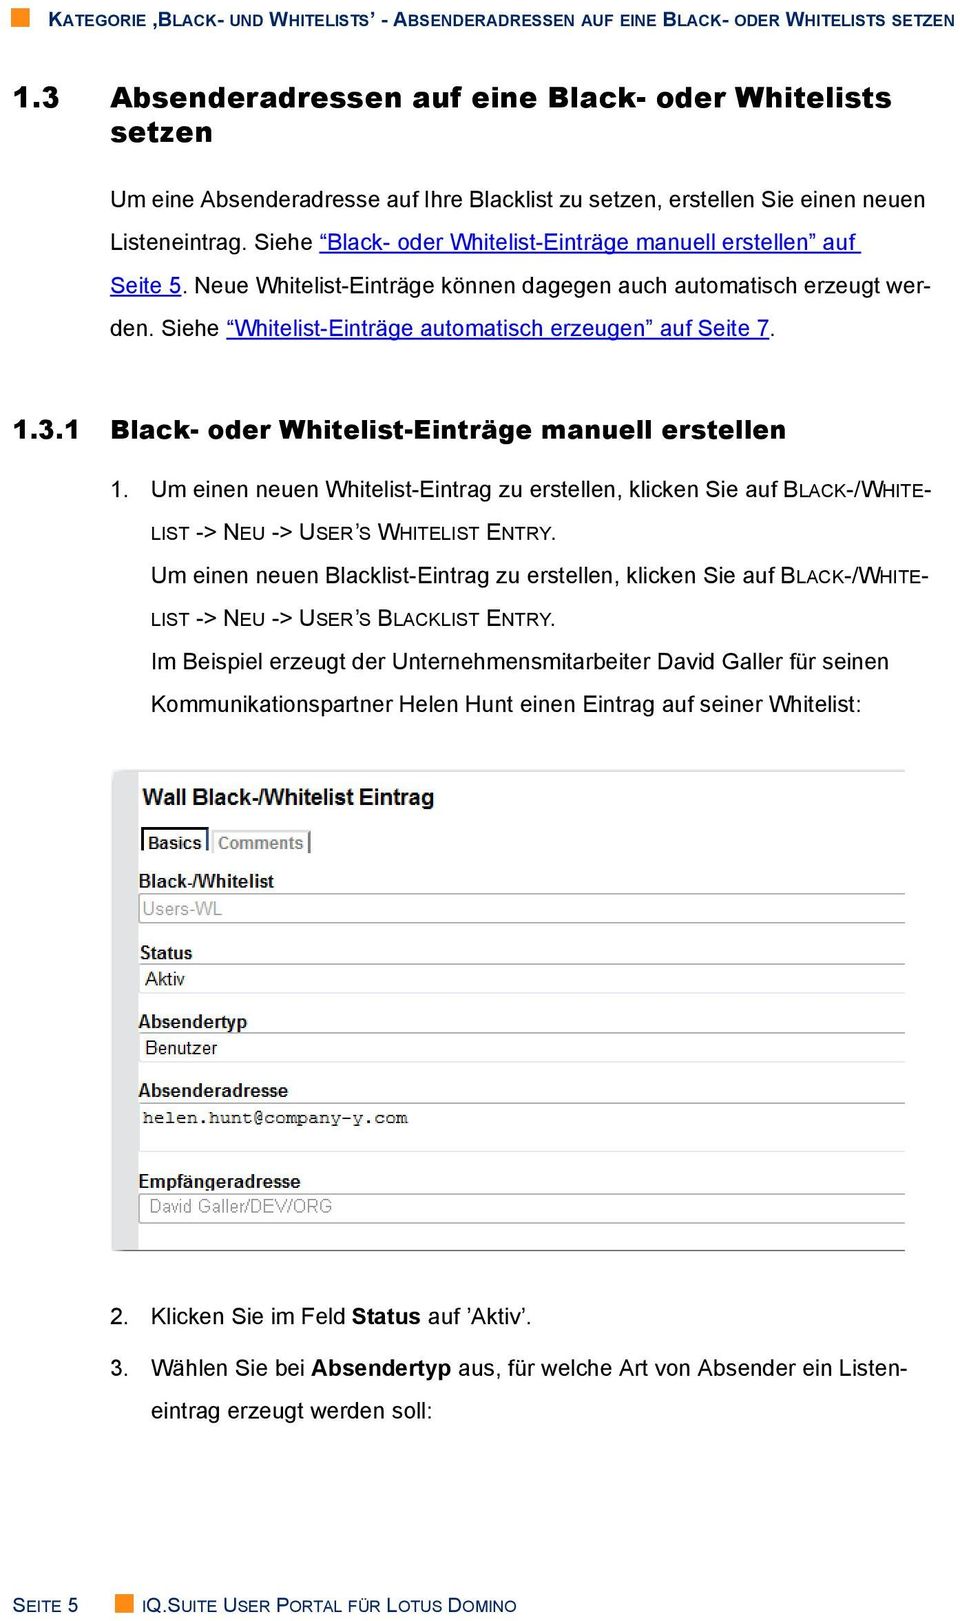 Siehe Black- oder Whitelist-Einträge manuell erstellen auf Seite 5. Neue Whitelist-Einträge können dagegen auch automatisch erzeugt werden. Siehe Whitelist-Einträge automatisch erzeugen auf Seite 7.